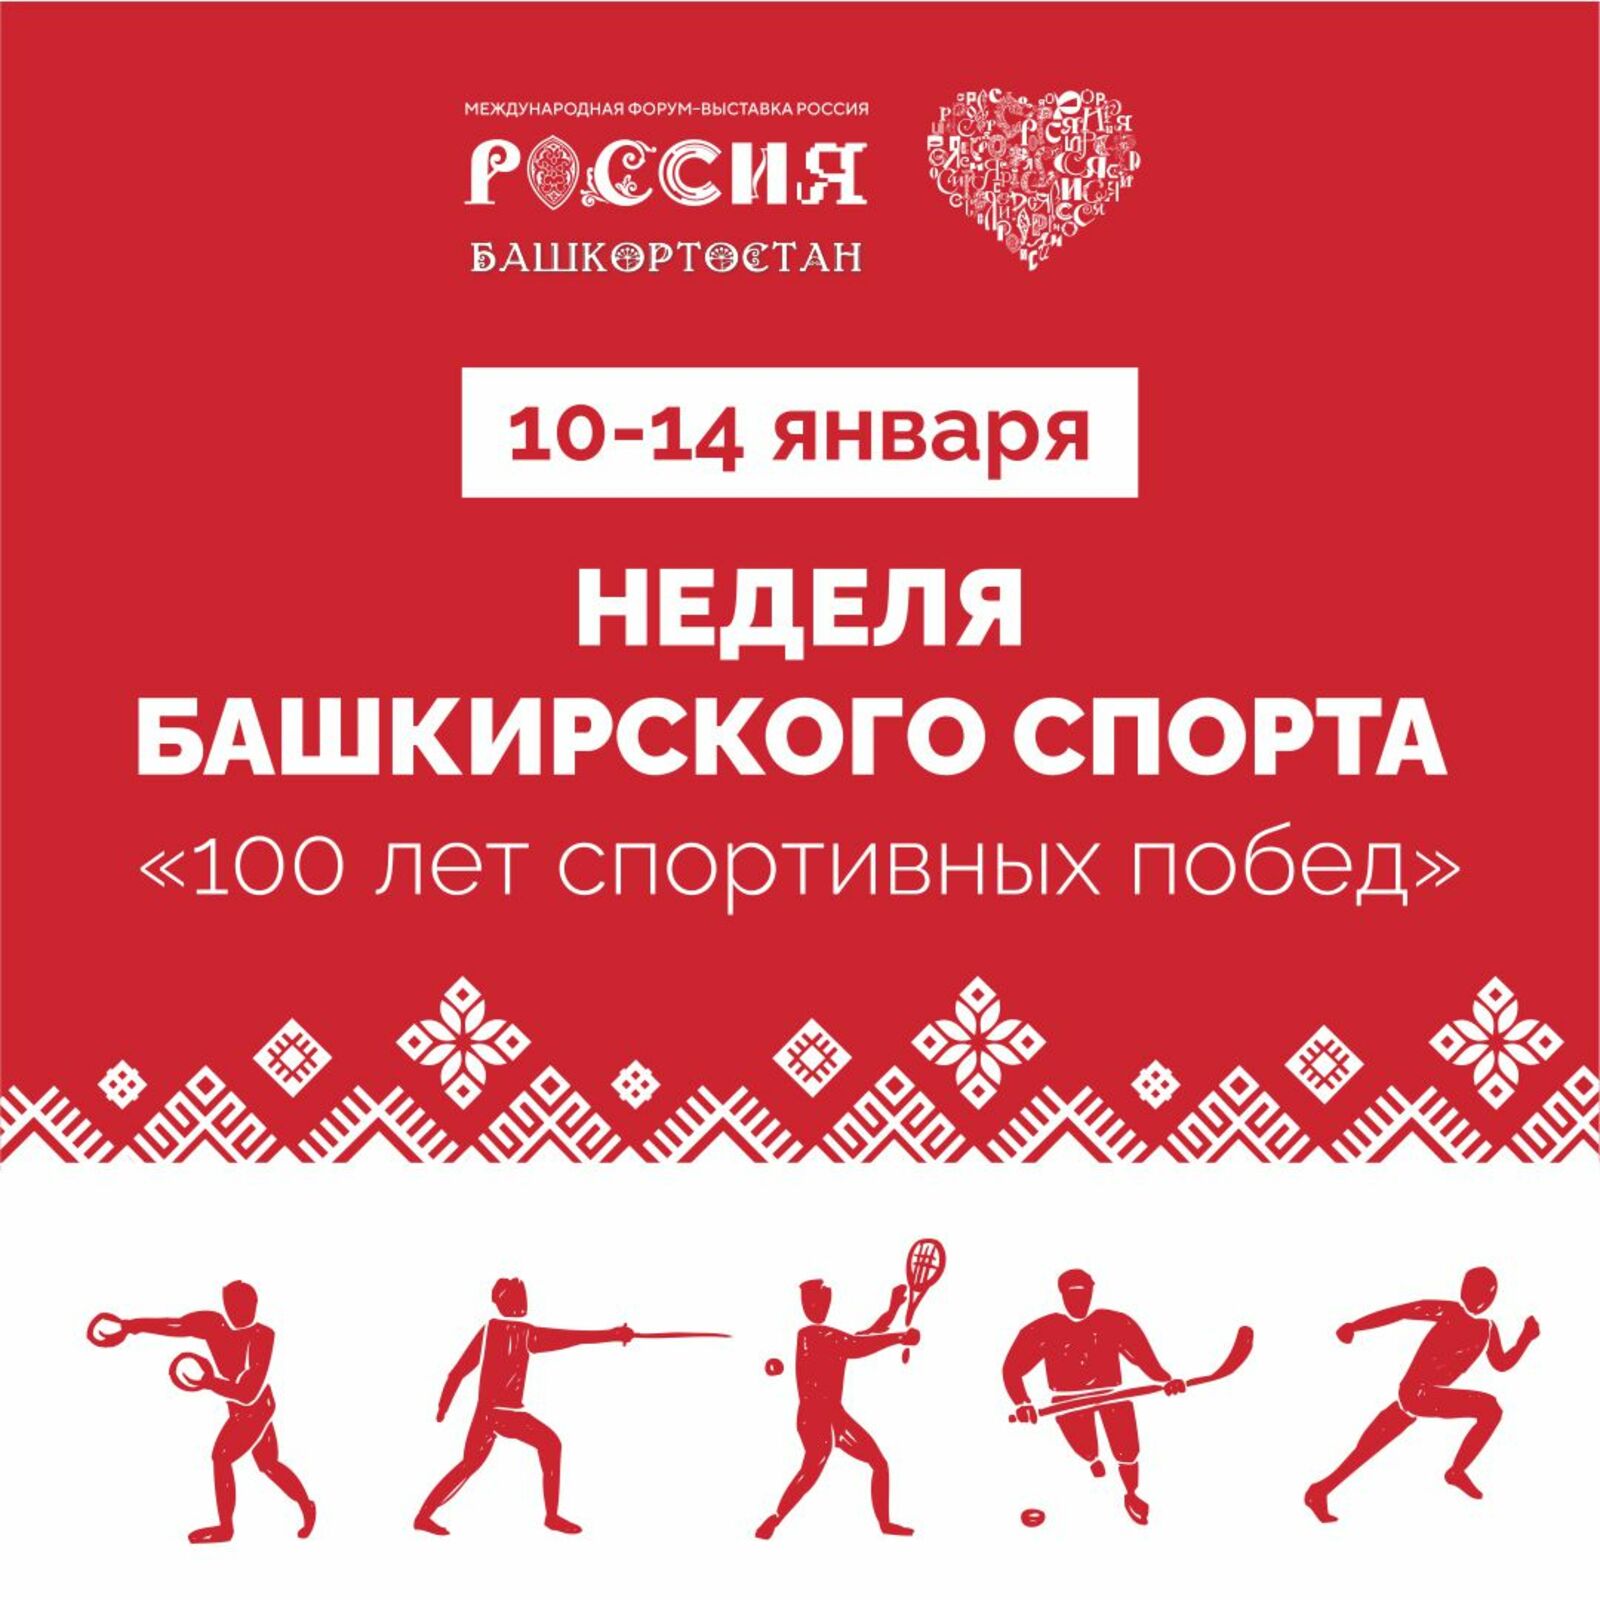 В Москве на ВДНХ пройдёт неделя башкирского спорта